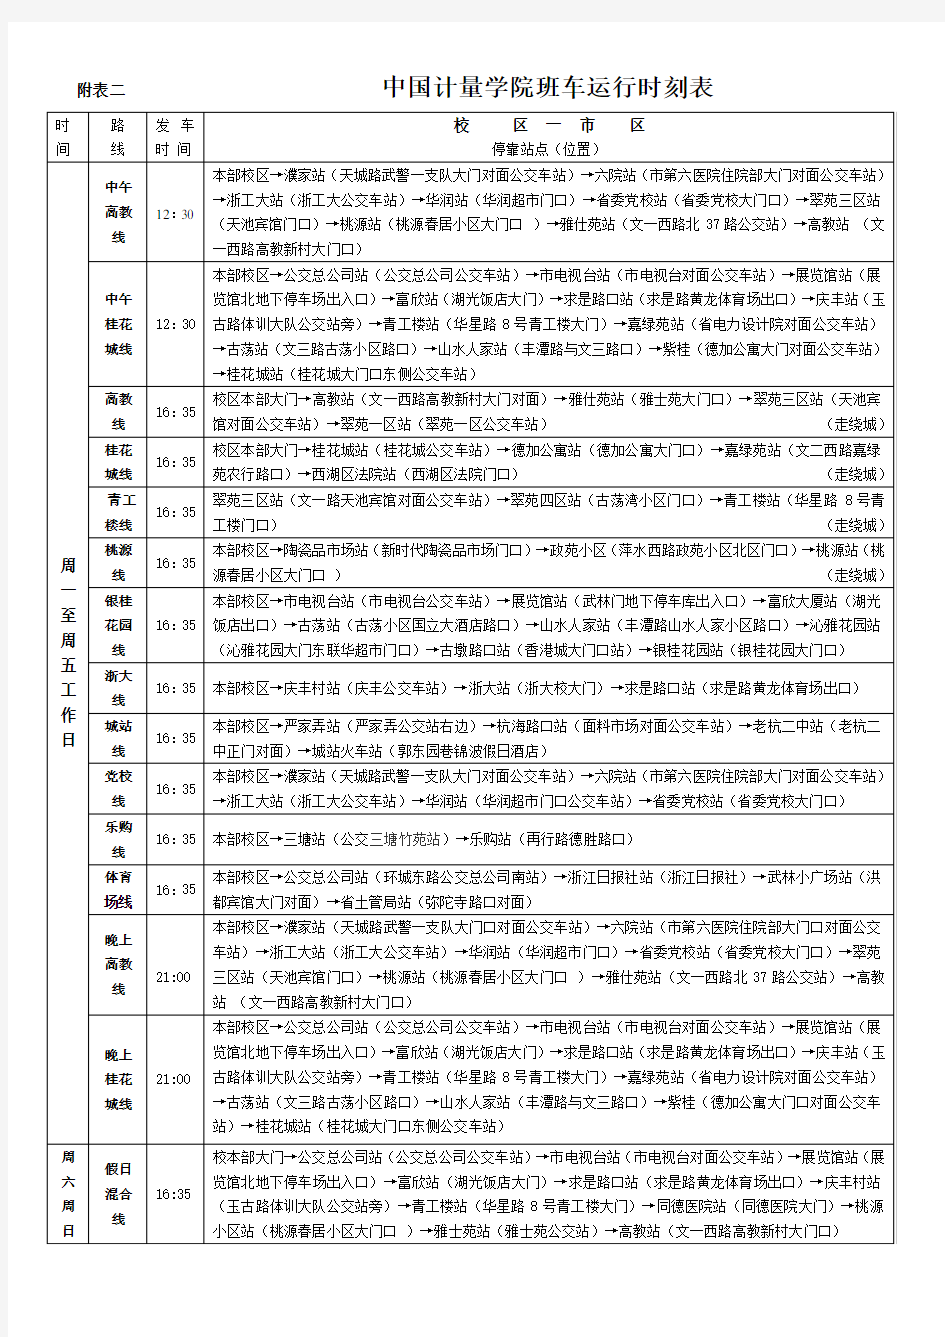 中国计量学院班车运行时刻表-中国计量大学